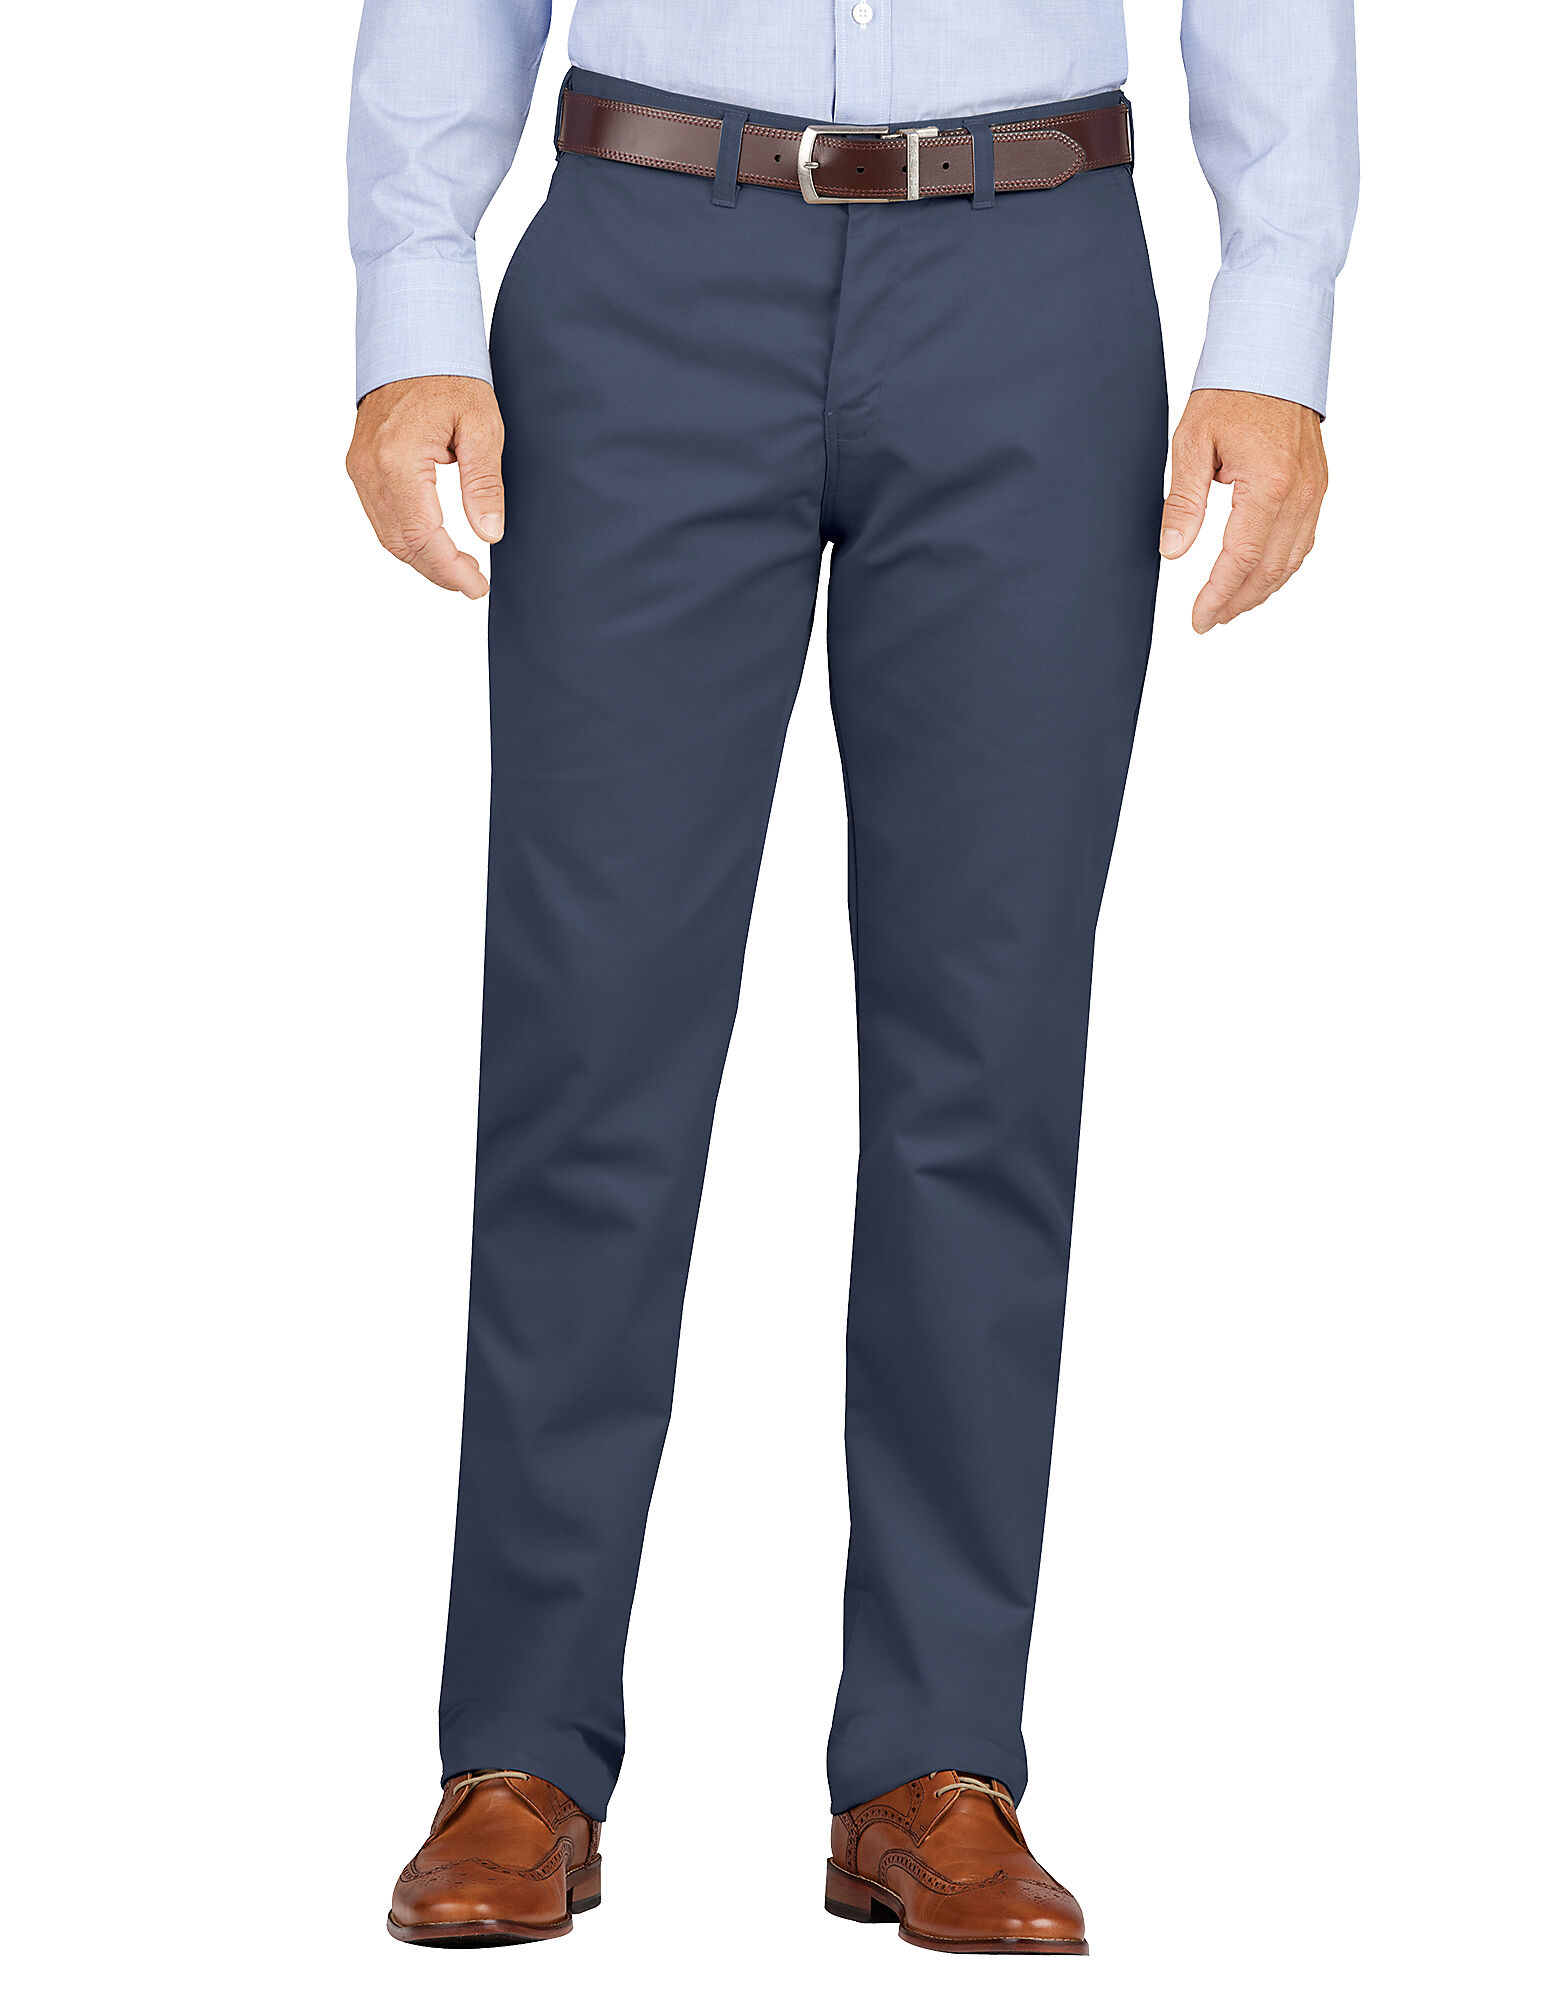 khaki dress pants for men dark navy blue  slit fit